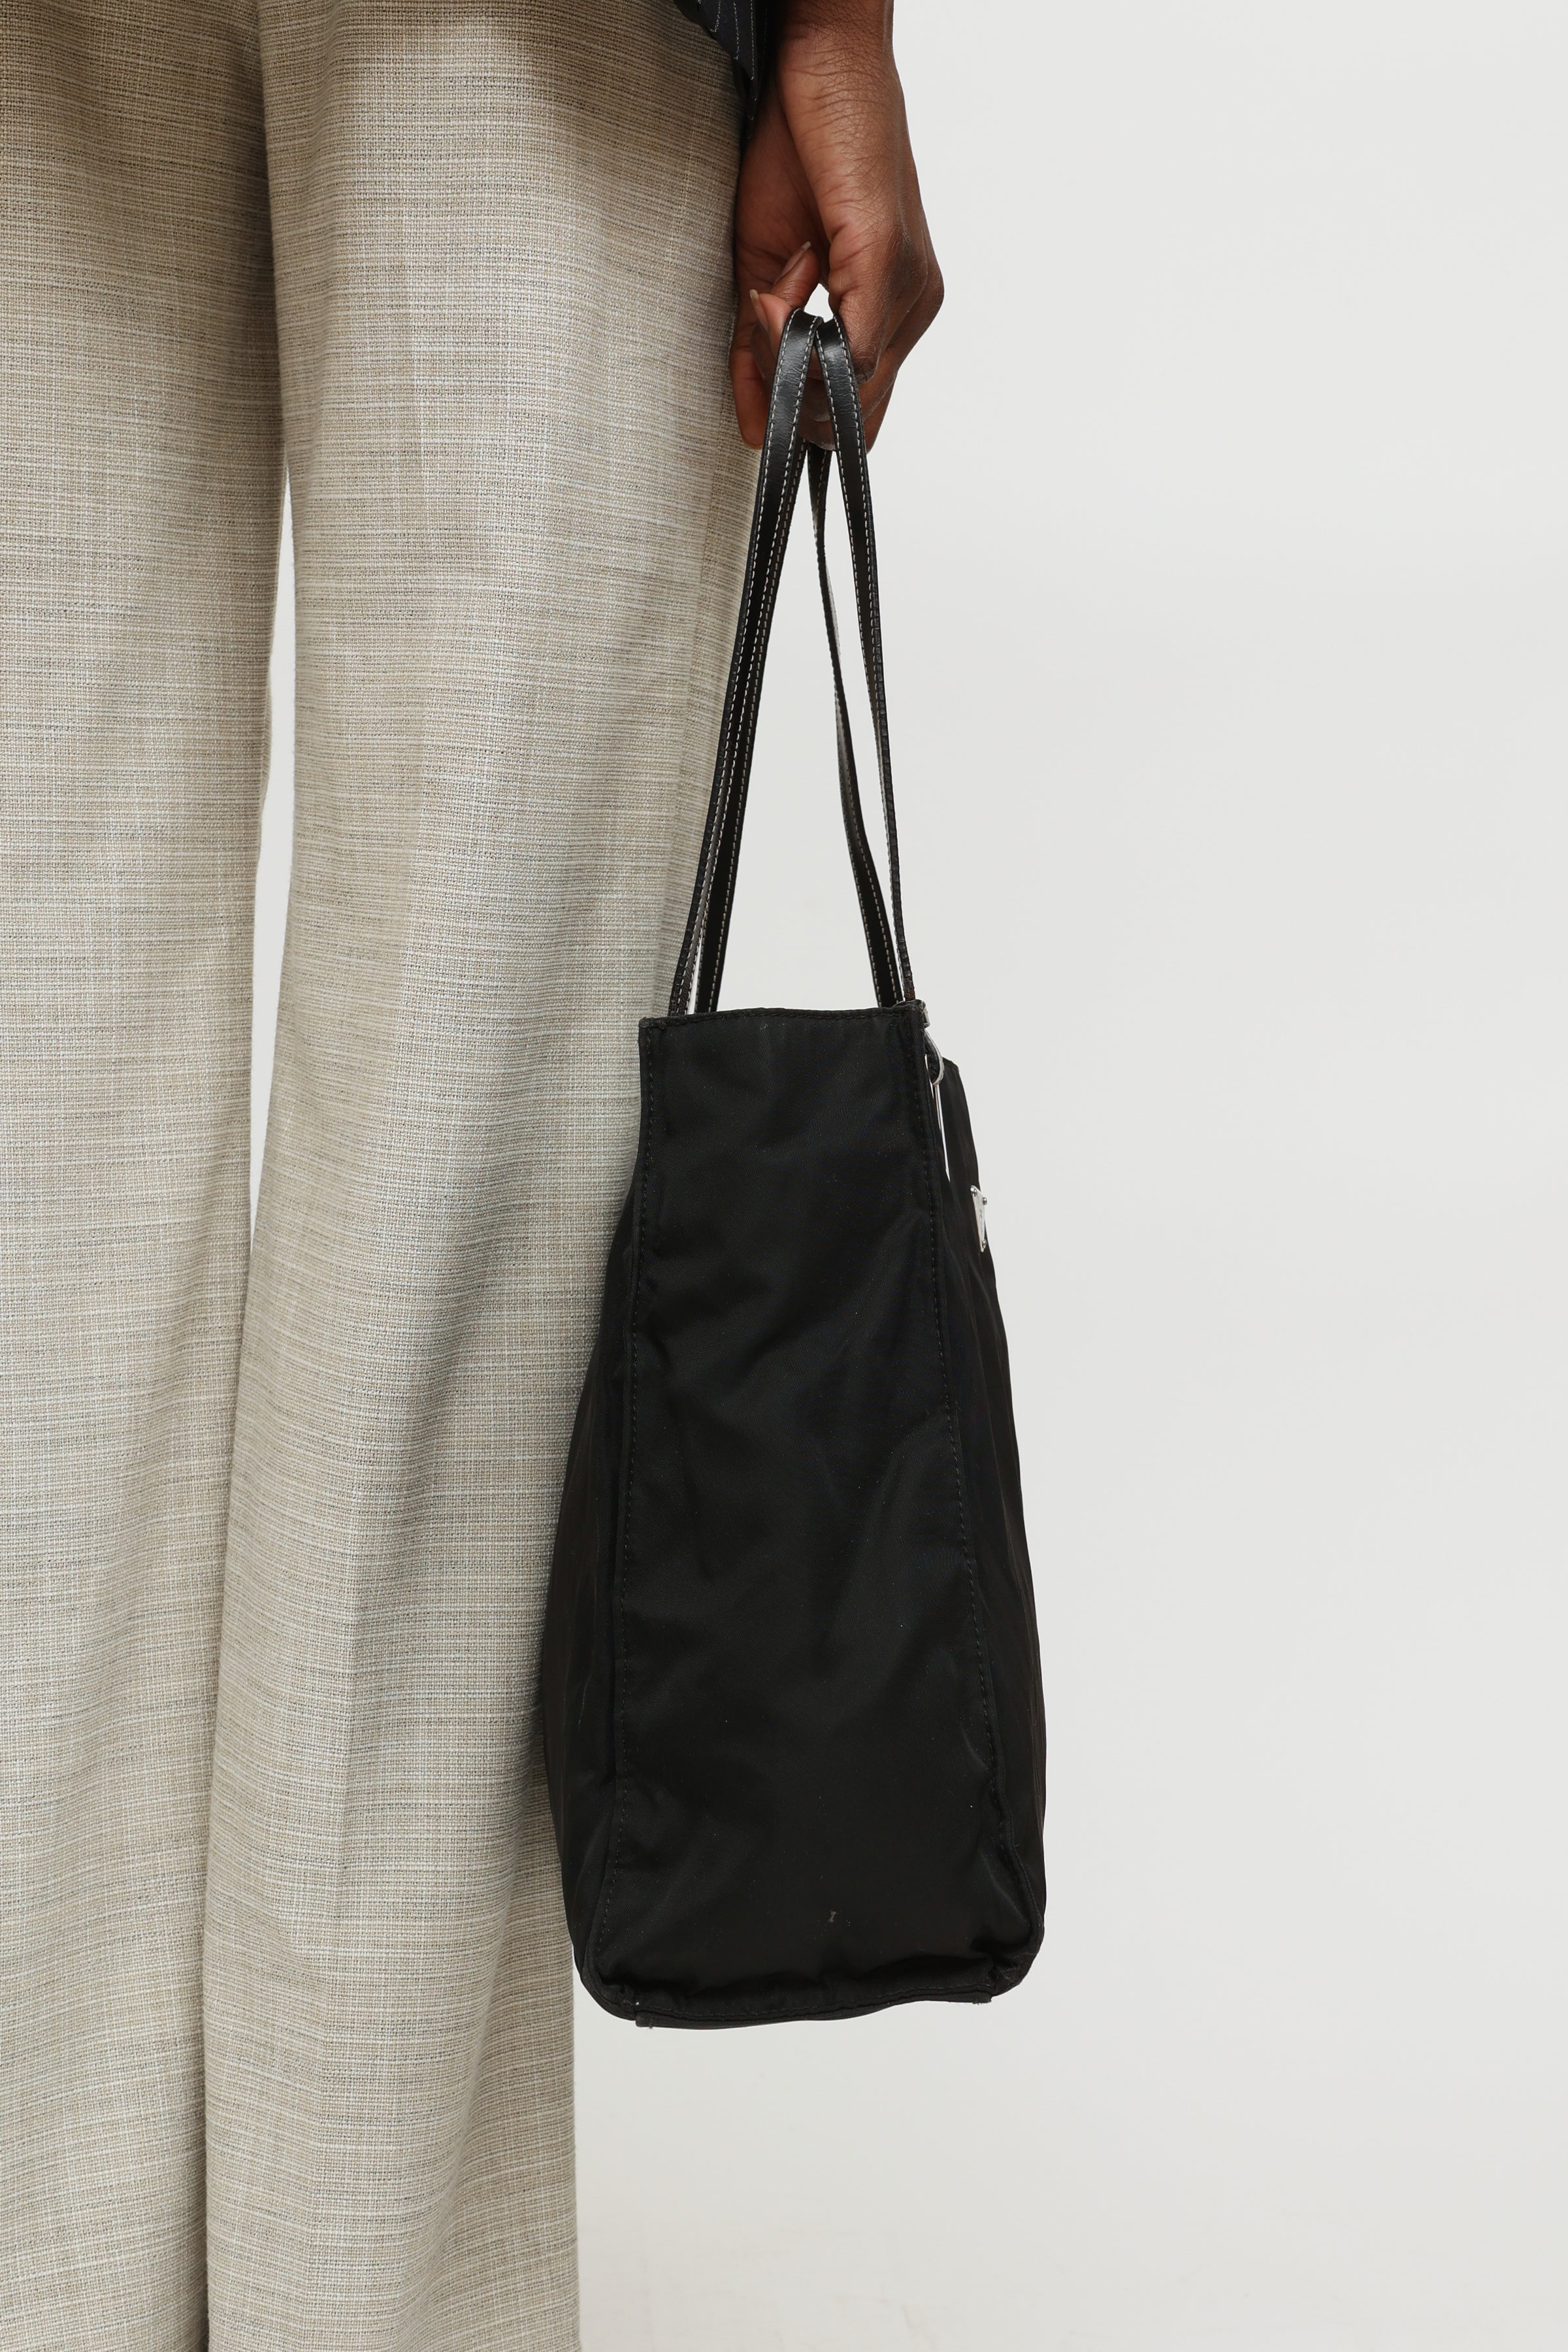 Prada // Black Nylon Tessuto Shoulder Bag – VSP Consignment